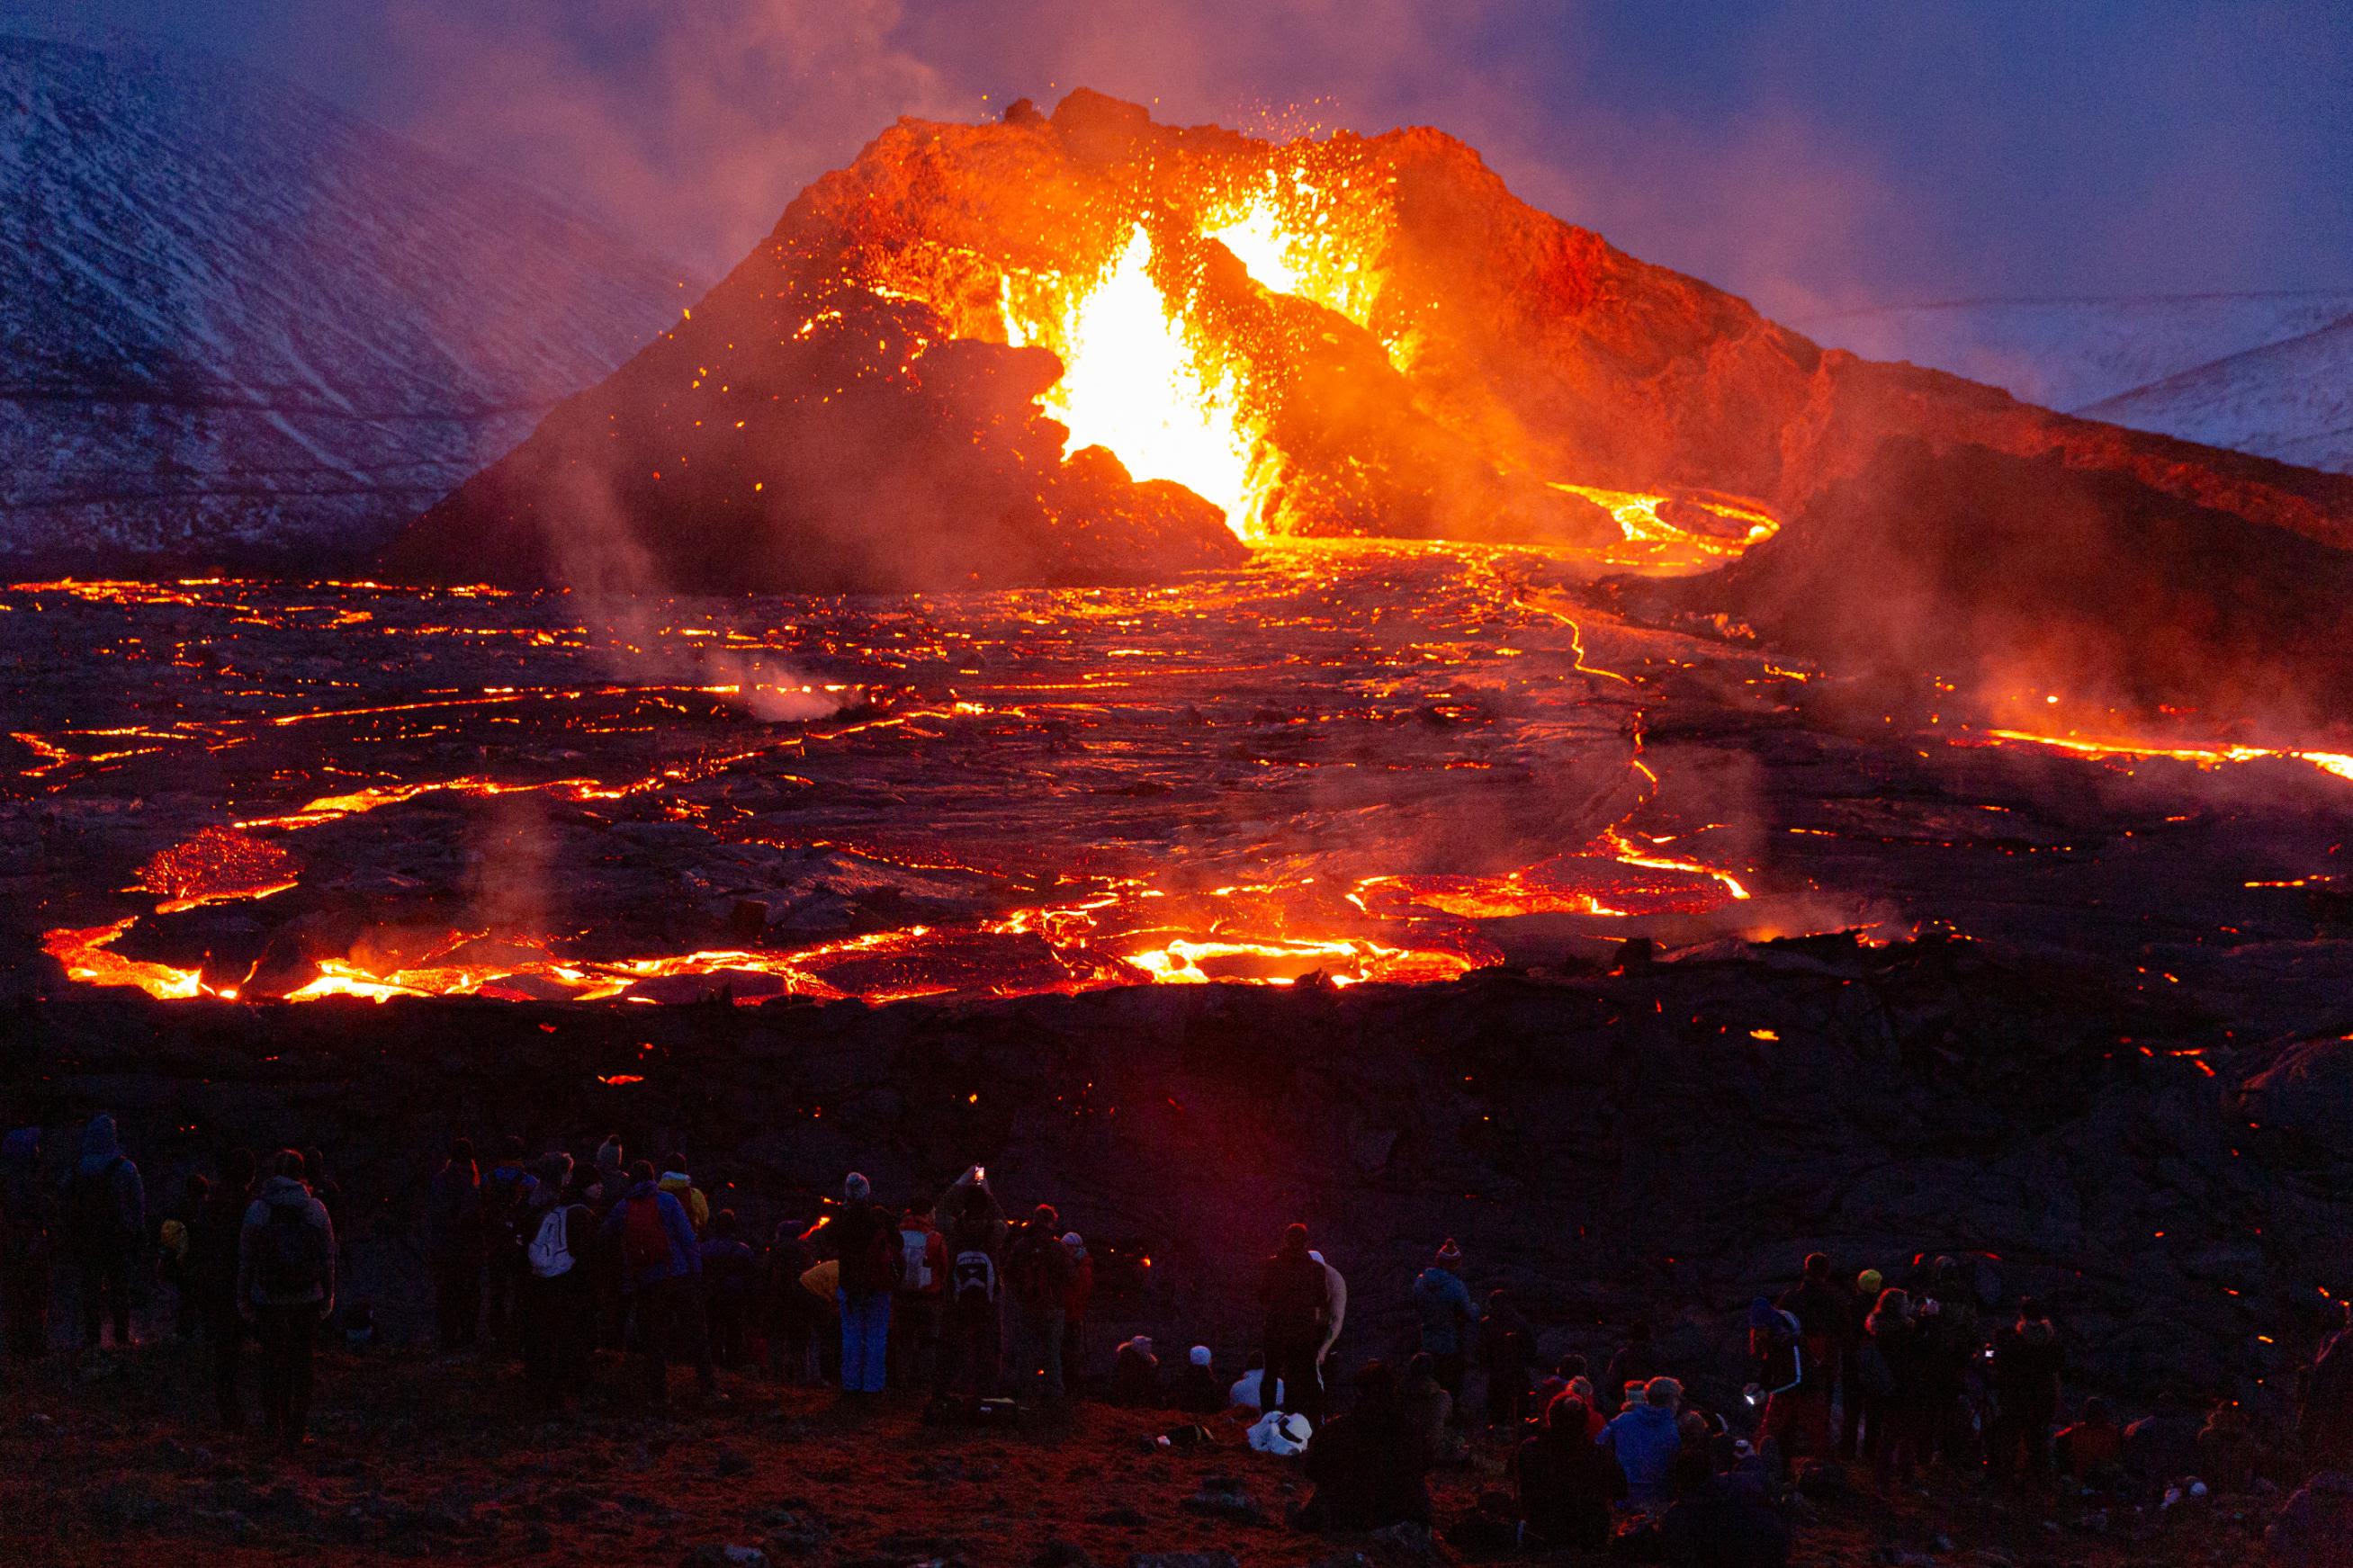 Volcano in Iceland erupting